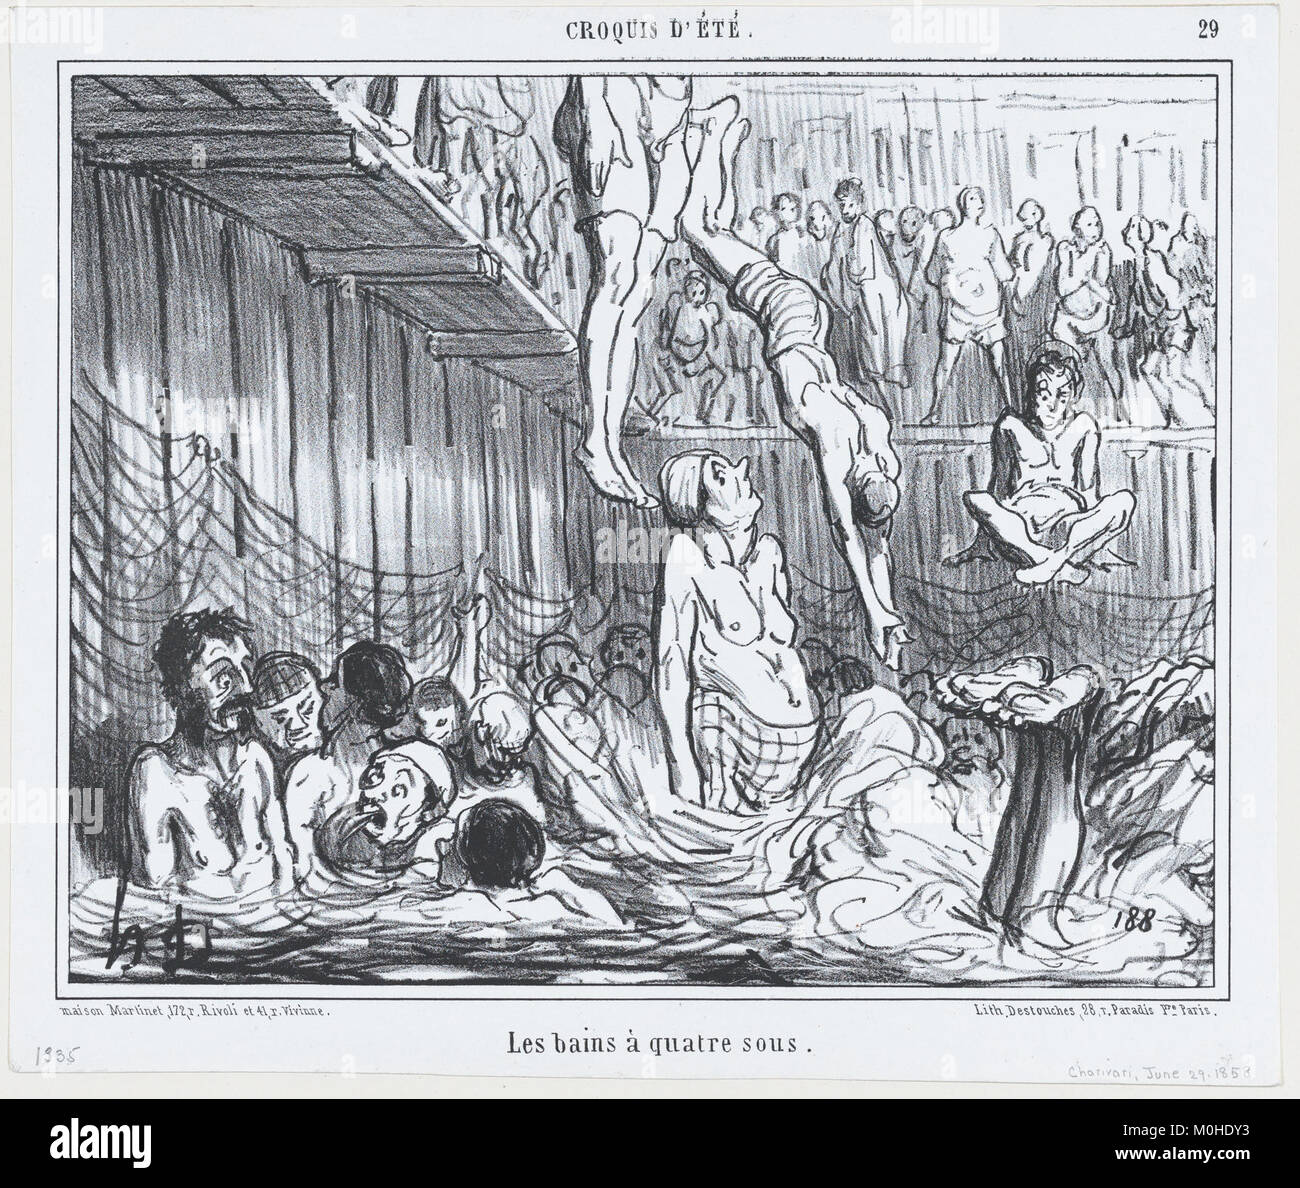 Les Bains à quatre sous, da Croquis d'été, pubblicato in Le Charivari, Giugno 29, 1858 INCONTRATO DP876707 Foto Stock